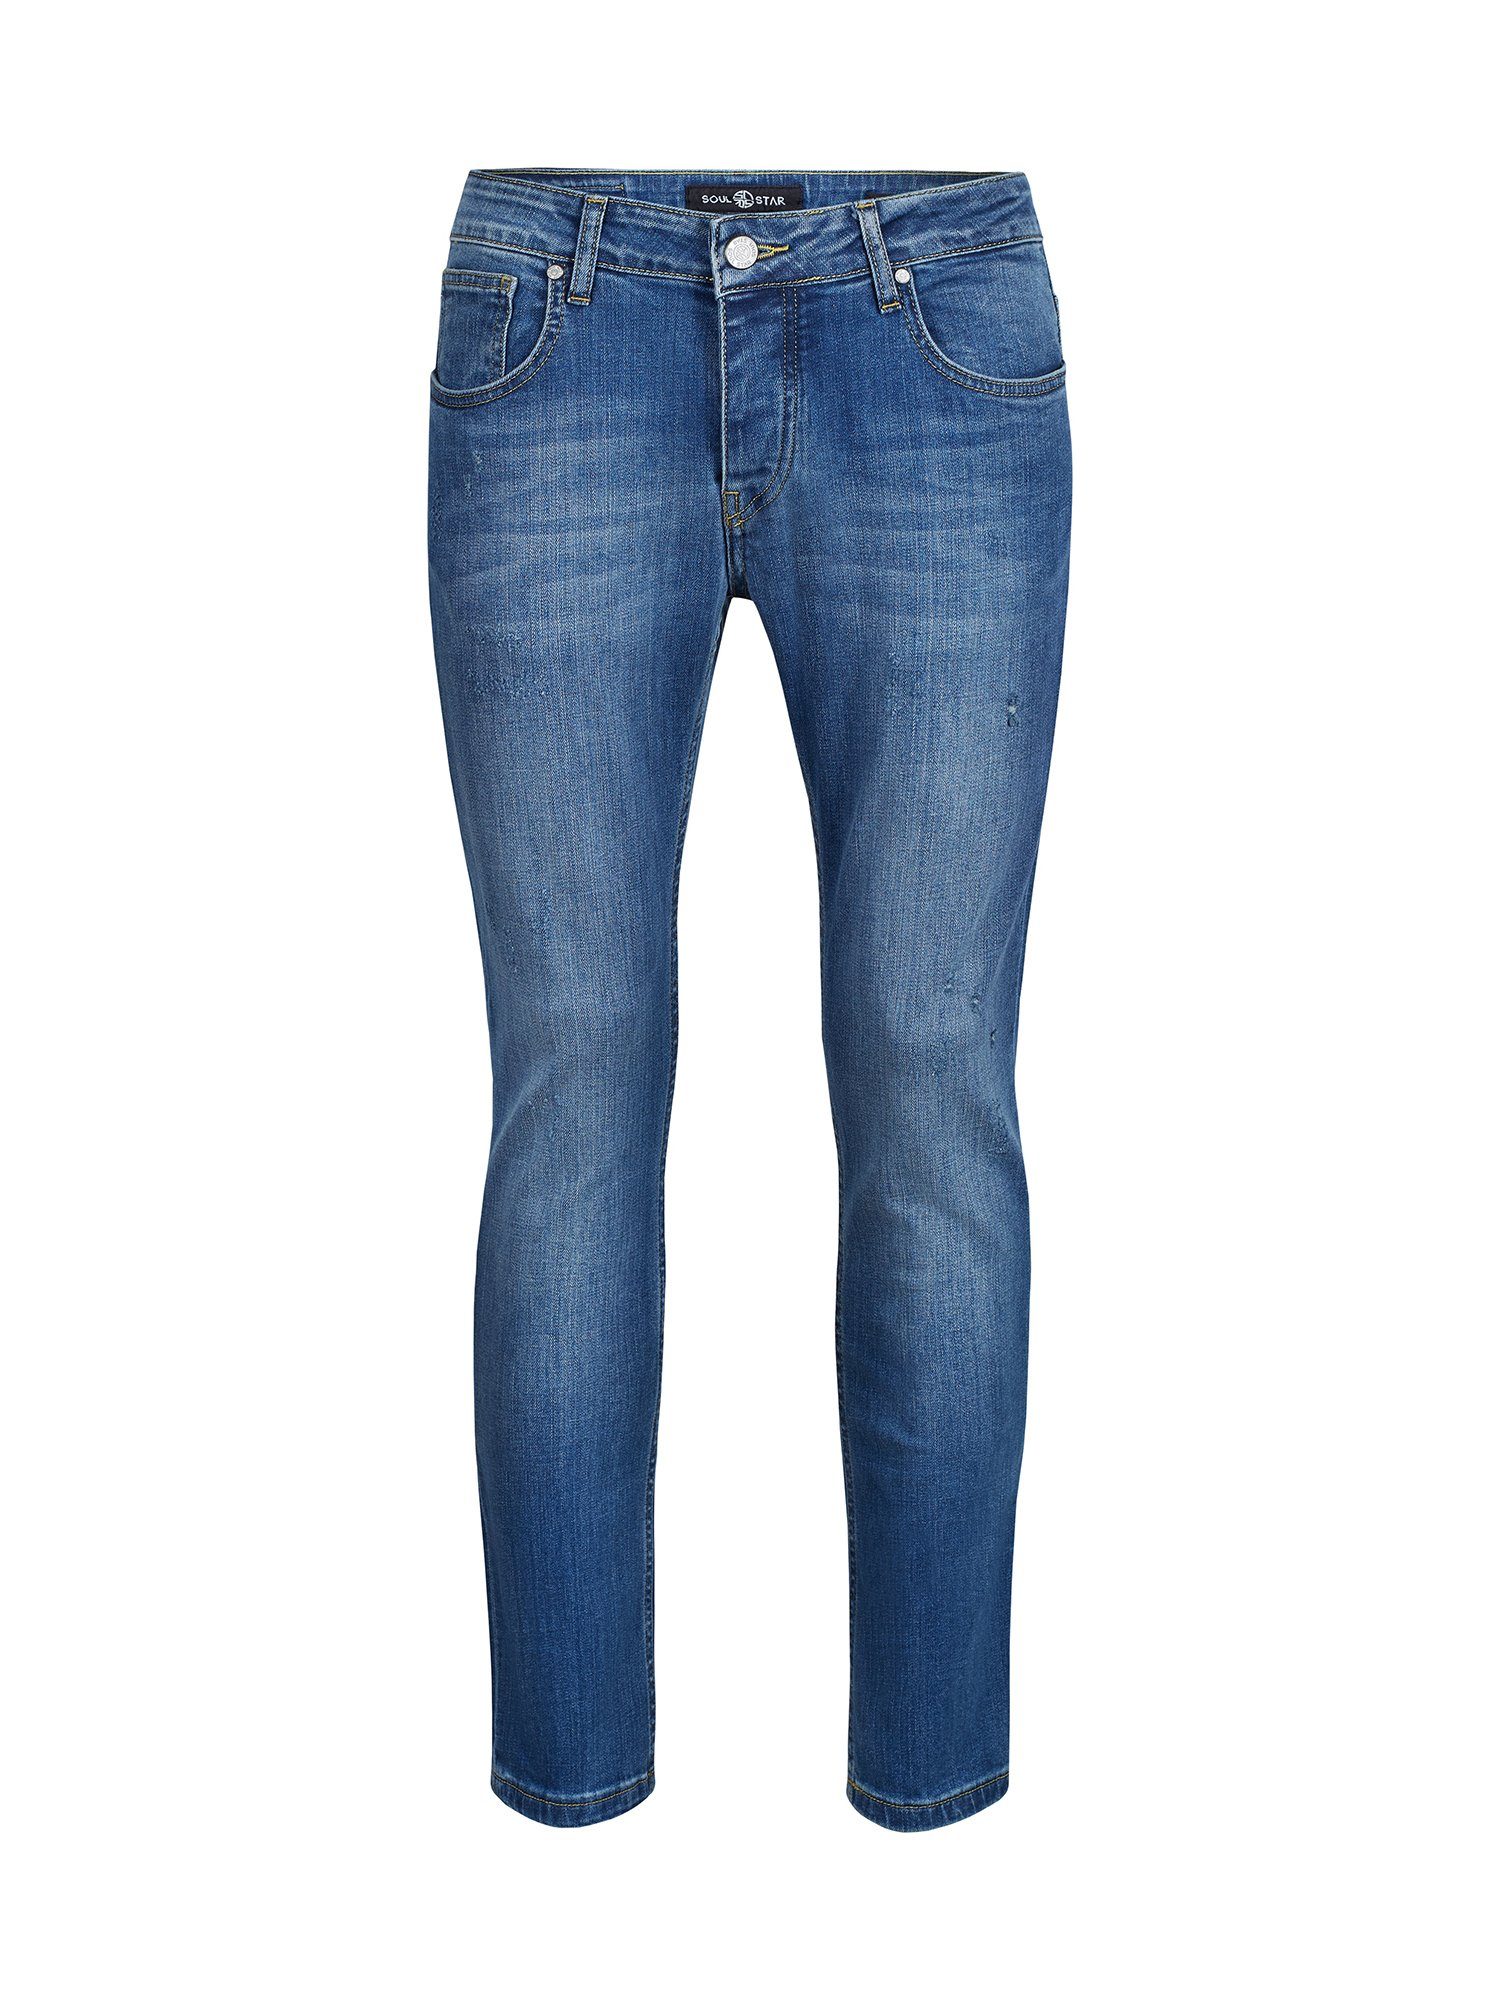 SOULSTAR Regular-fit-Jeans MADRID Used-Wash-Stil hellblau im